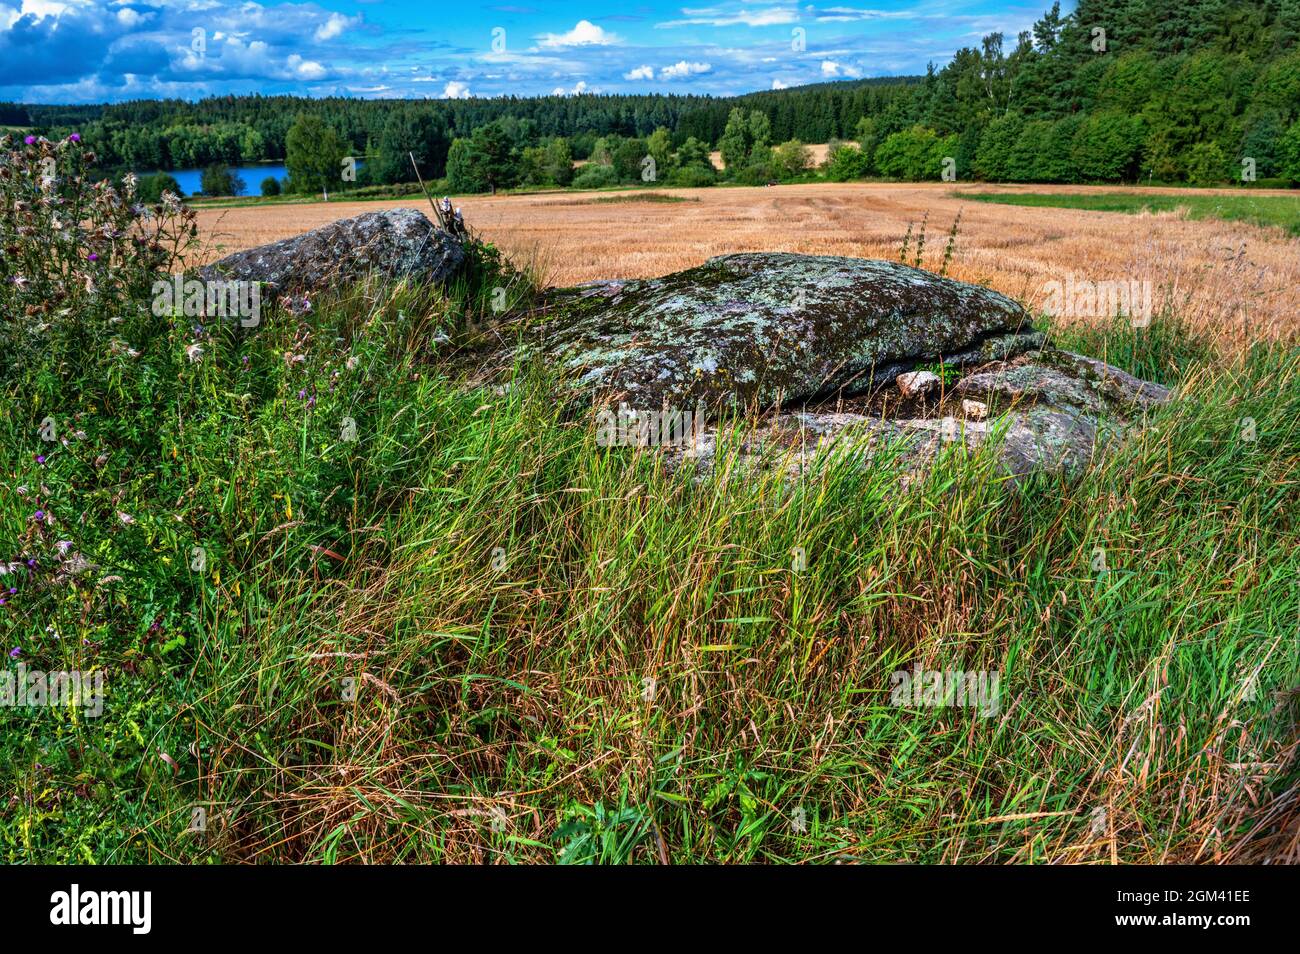 Felsbrocken in Wiese, Feld, Wald und Teich am Horizont, in der Nähe des Dorfes Blato, Tschechische republik. Typische Landschaft in der Region „Tschechische Kanada“. Stockfoto